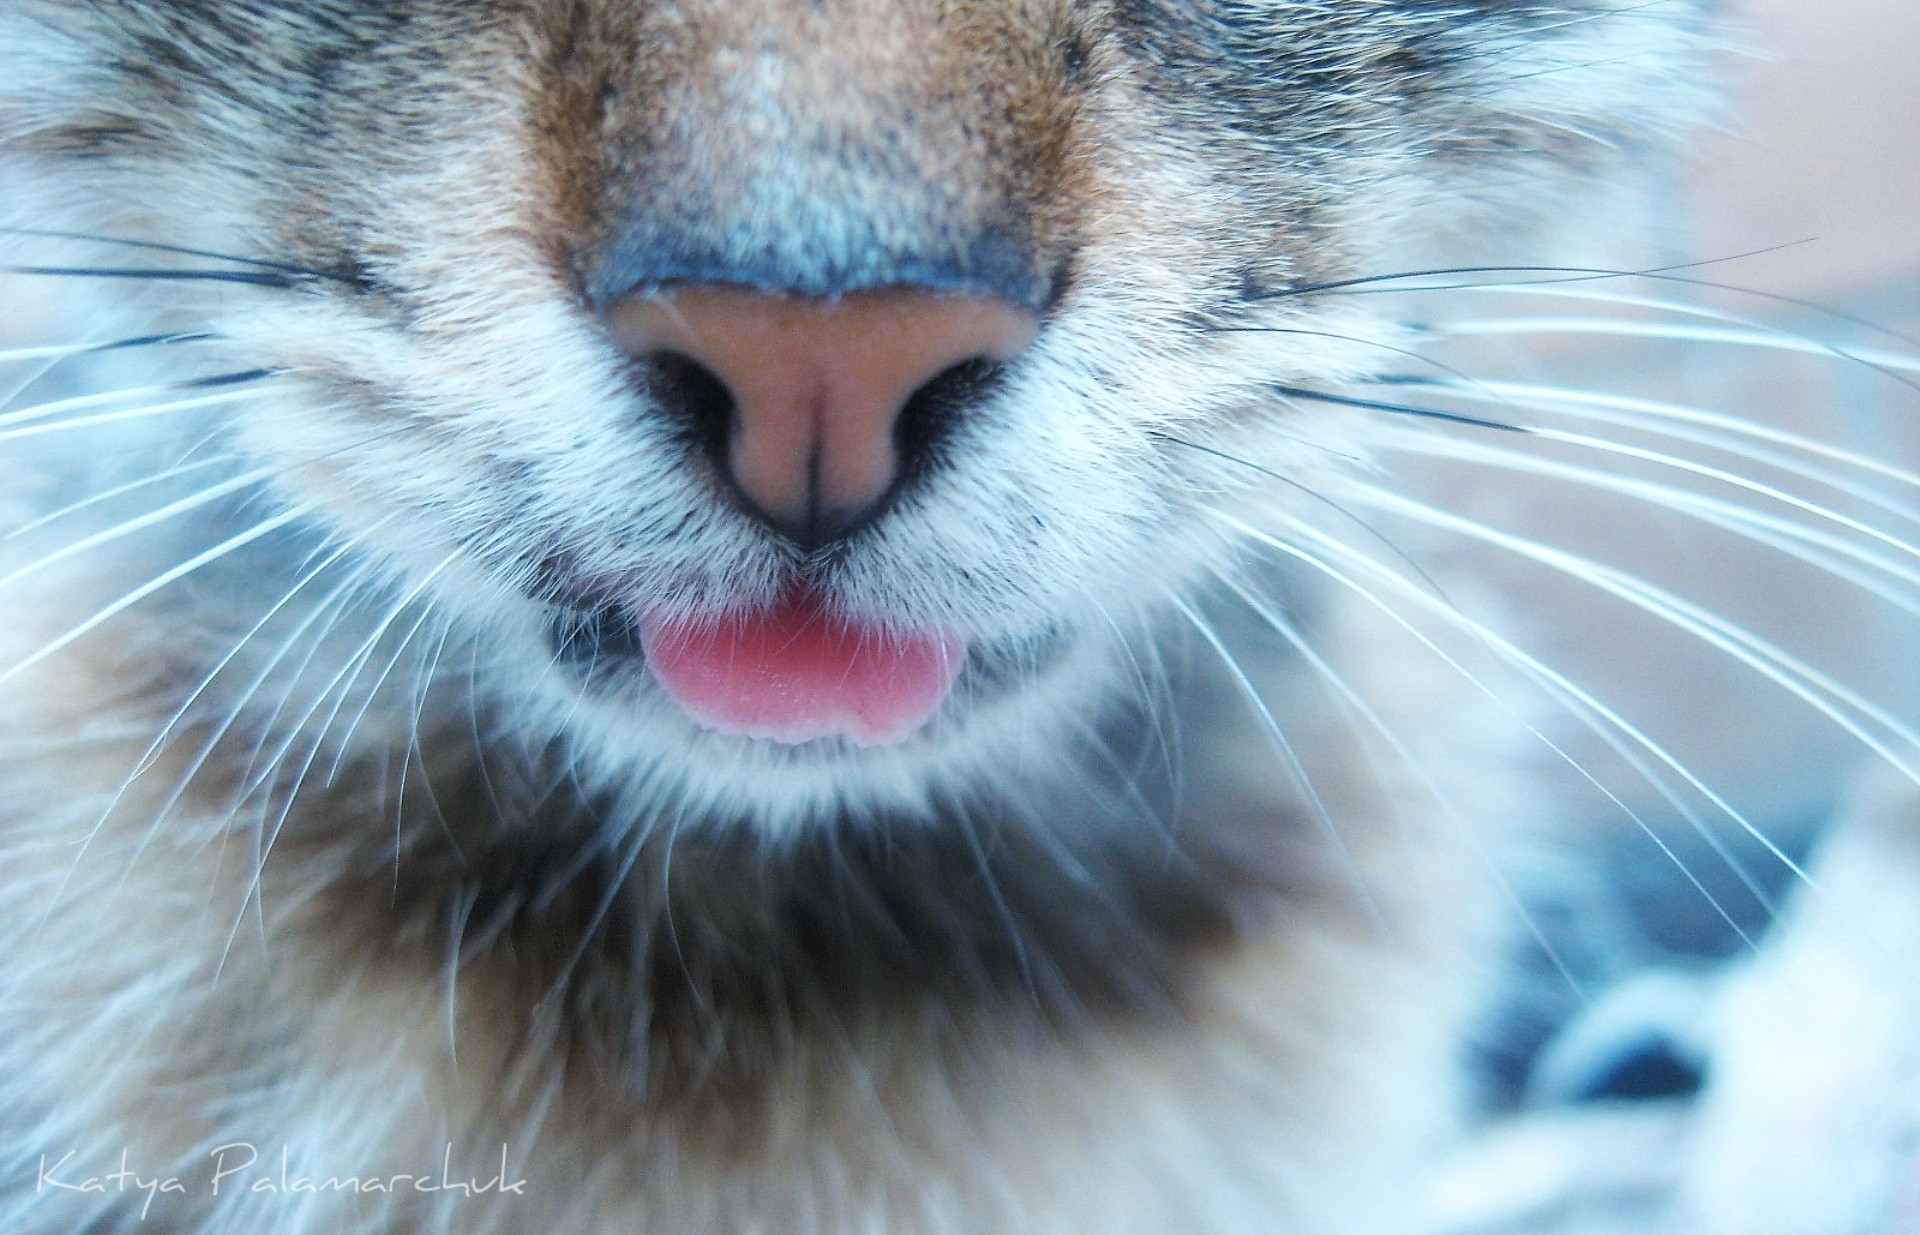 close-up, cats - desktop wallpaper